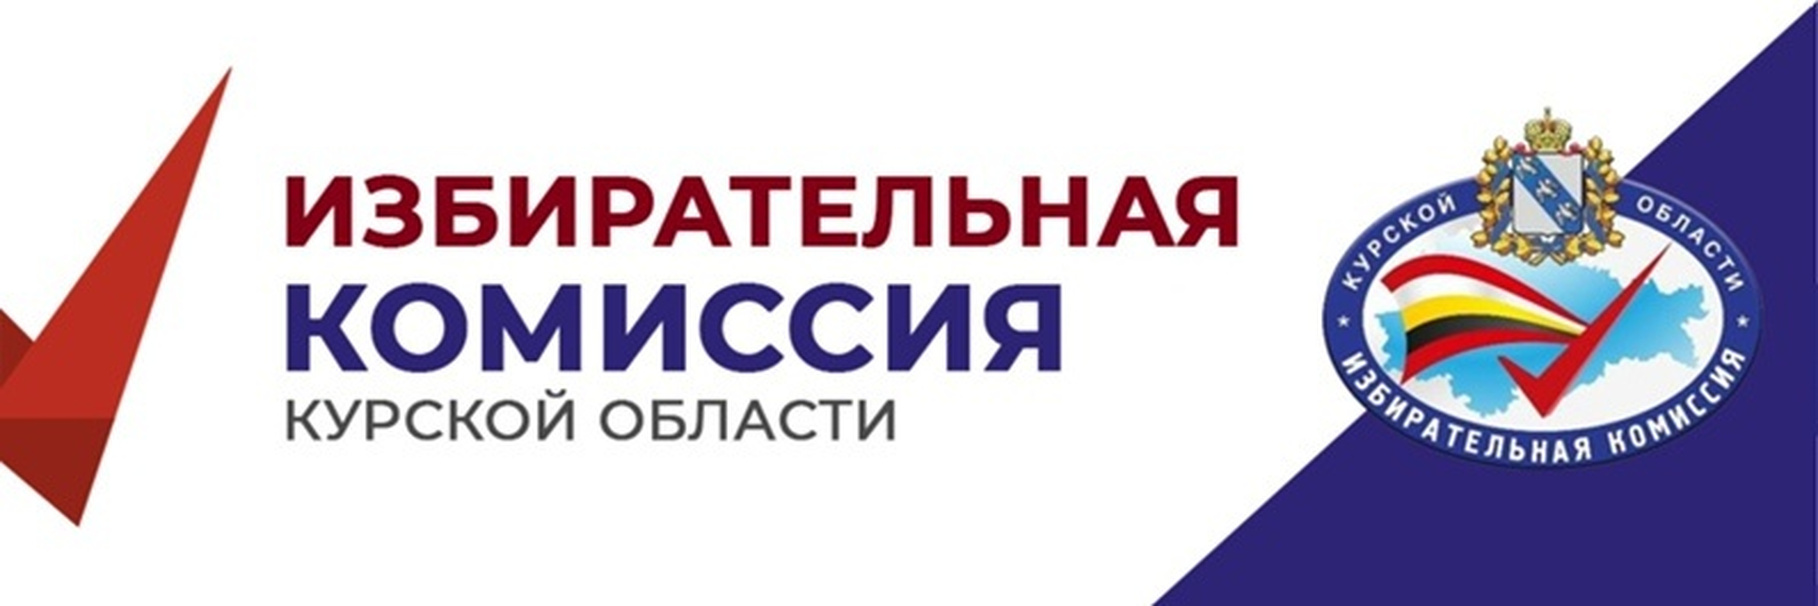 Избирательная комиссия Курской области.